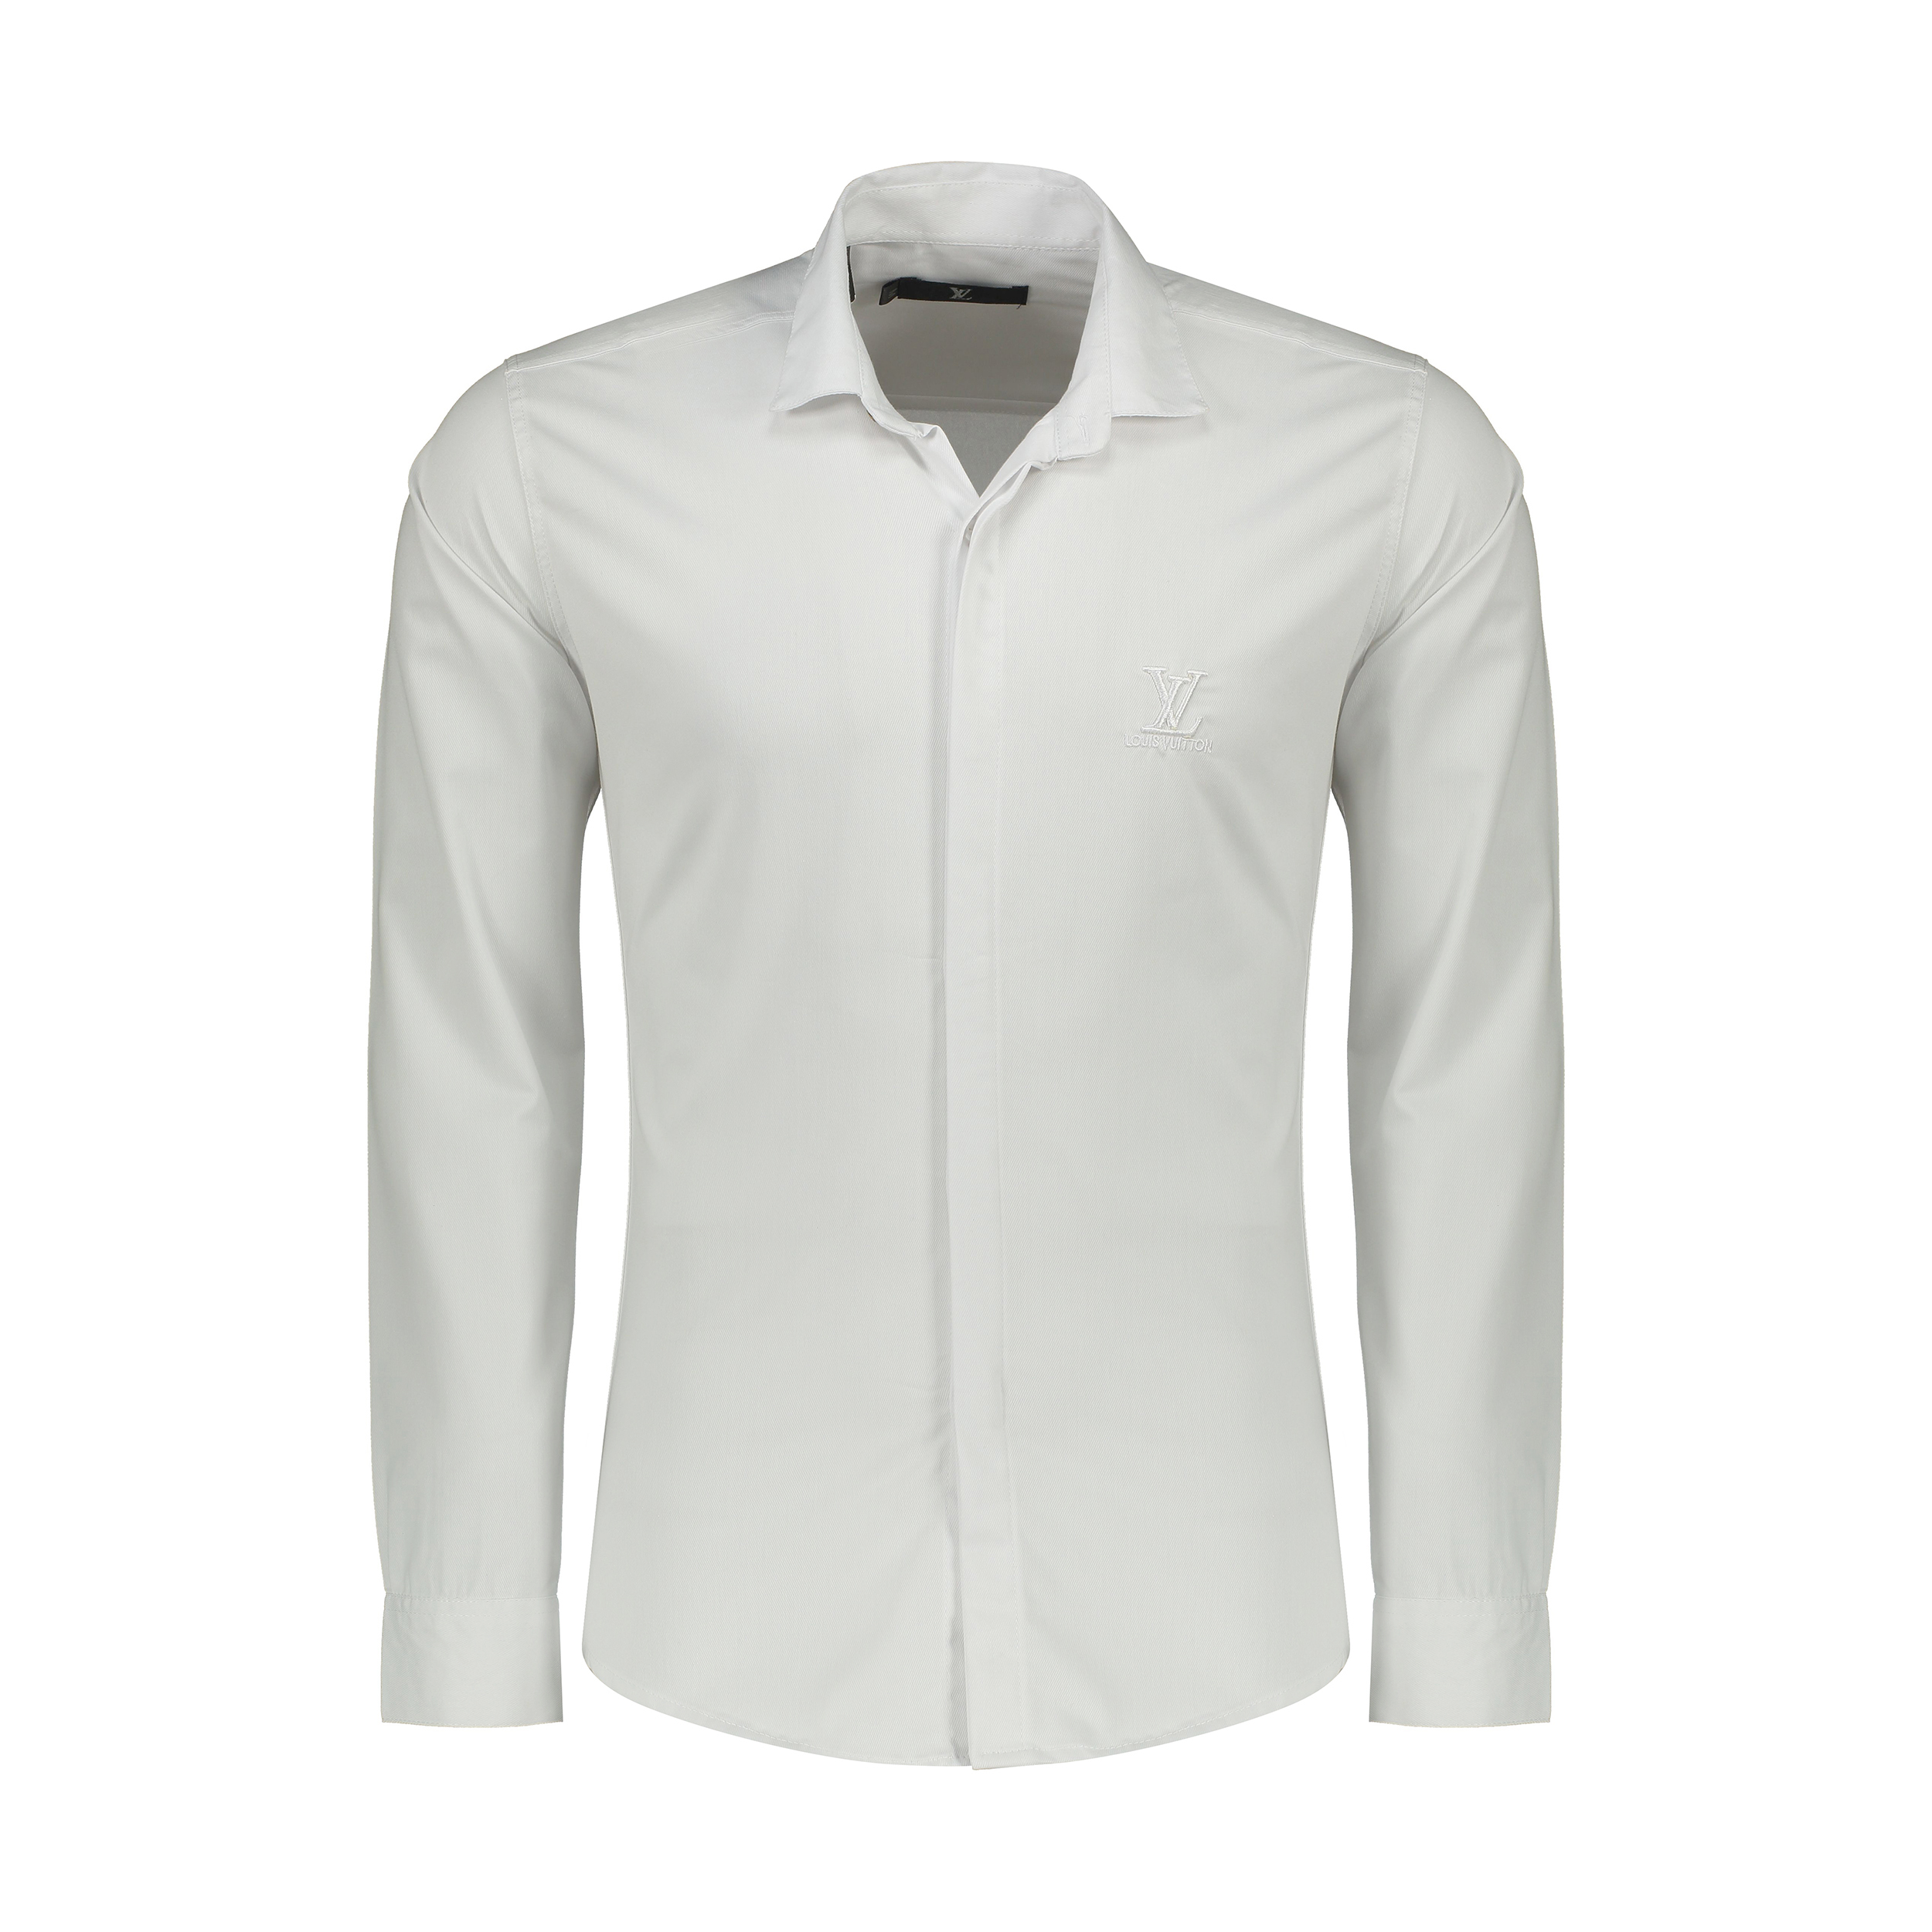 نکته خرید - قیمت روز پیراهن آستین بلند مردانه مدل L 700 خرید